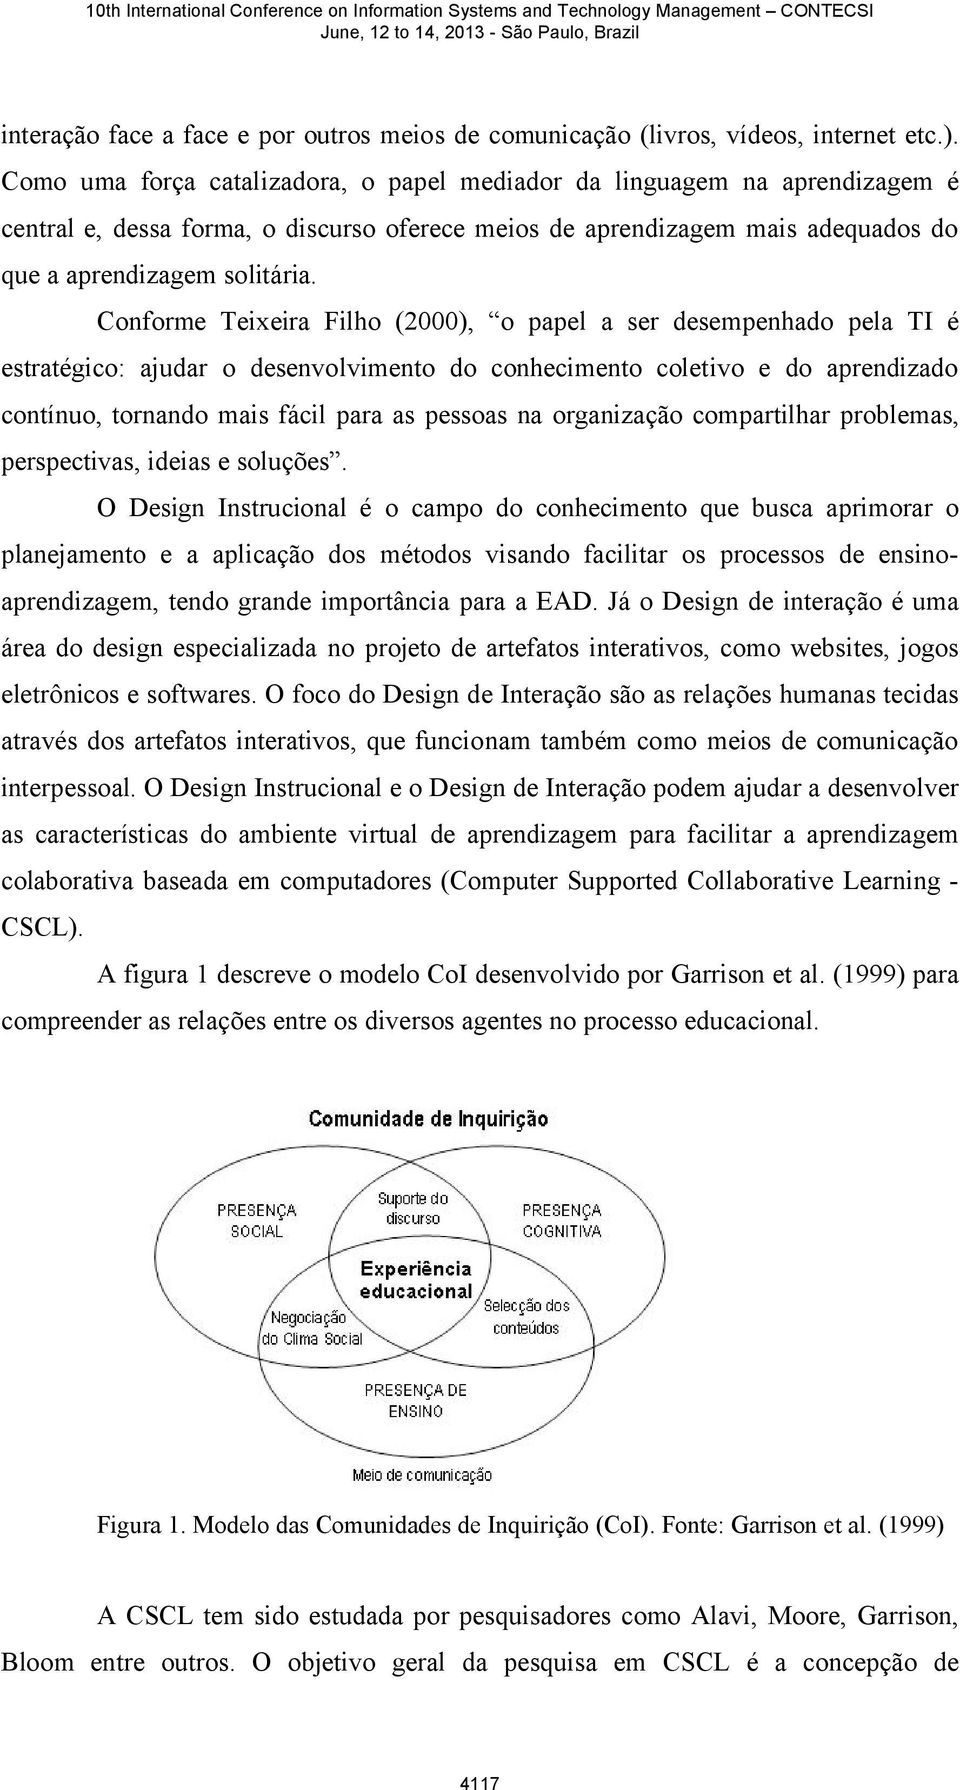 Conforme Teixeira Filho (2000), o papel a ser desempenhado pela TI é estratégico: ajudar o desenvolvimento do conhecimento coletivo e do aprendizado contínuo, tornando mais fácil para as pessoas na